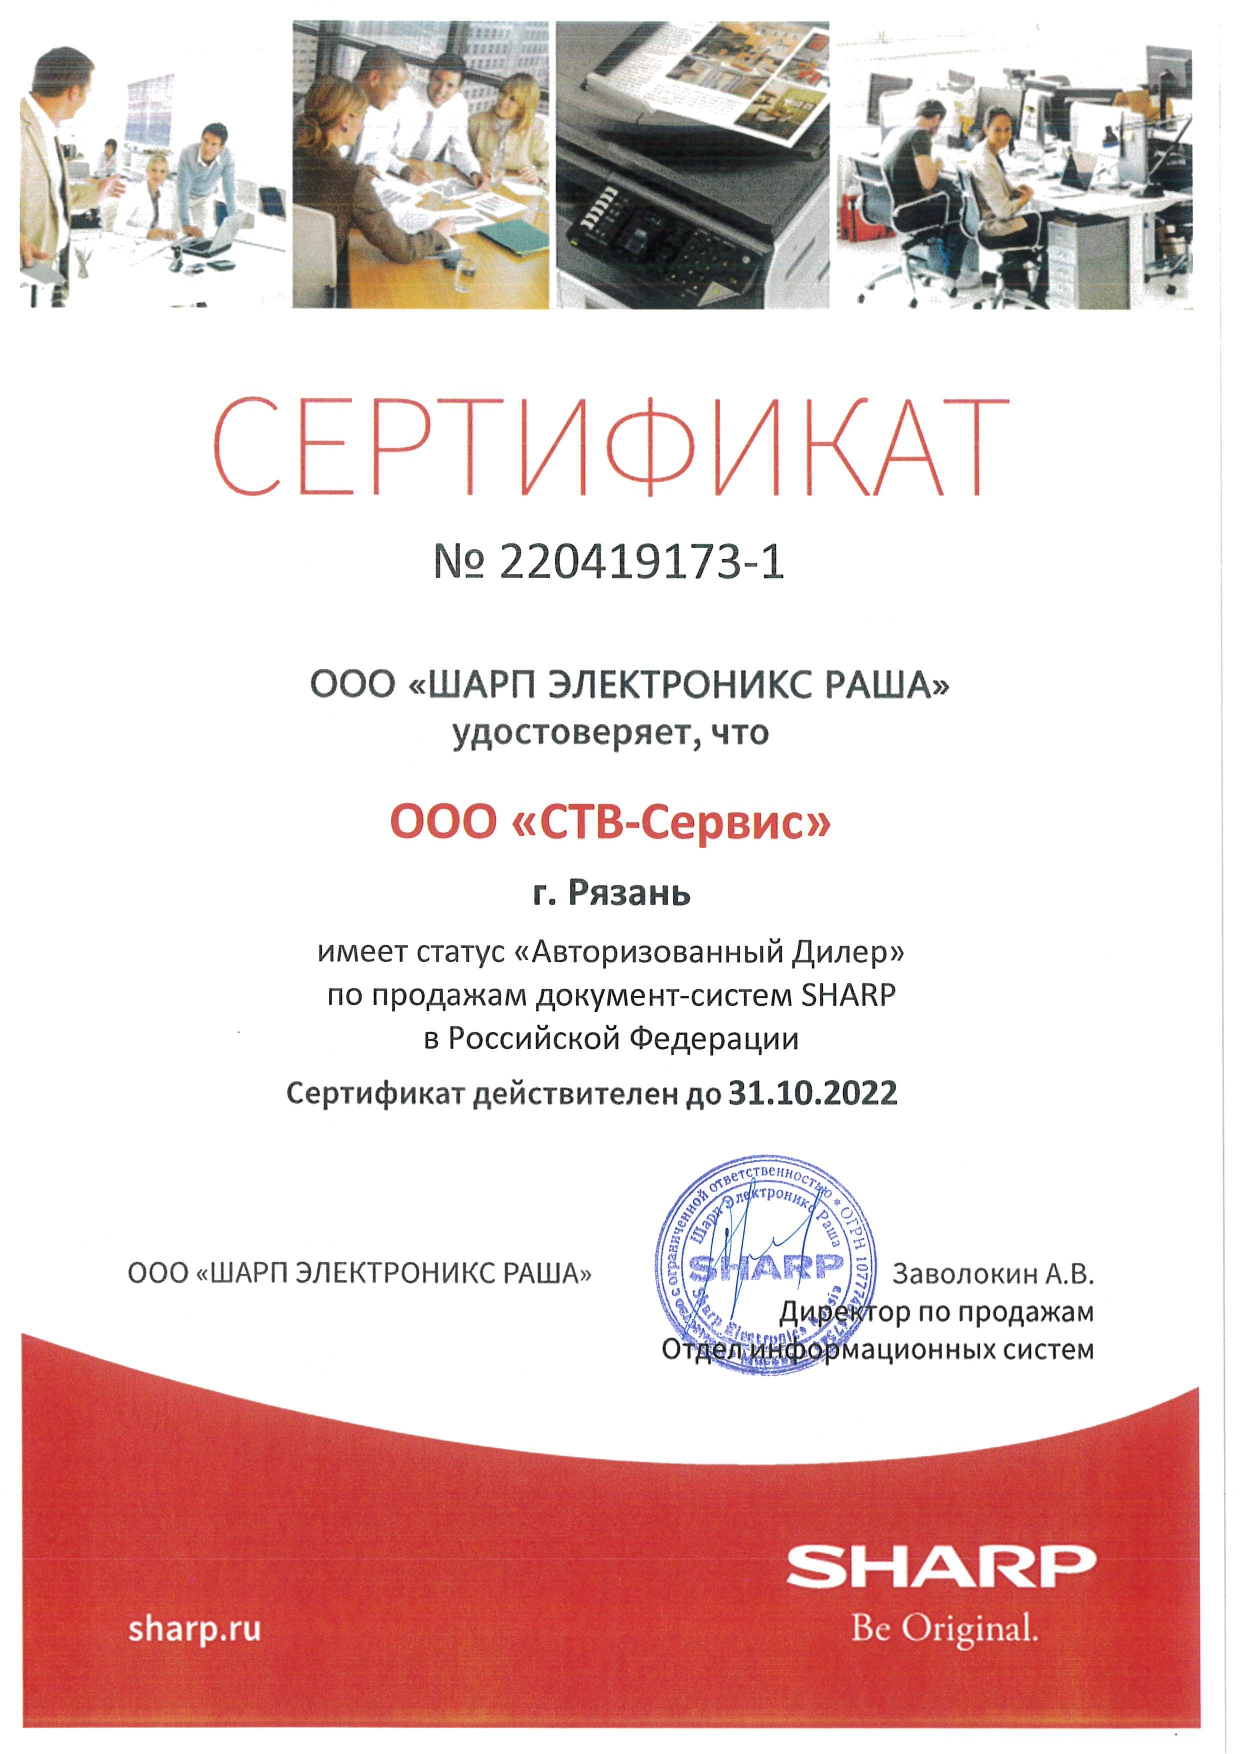 Авторизованный Дилер по продажам документ-систем SHARP в Российской Федерации